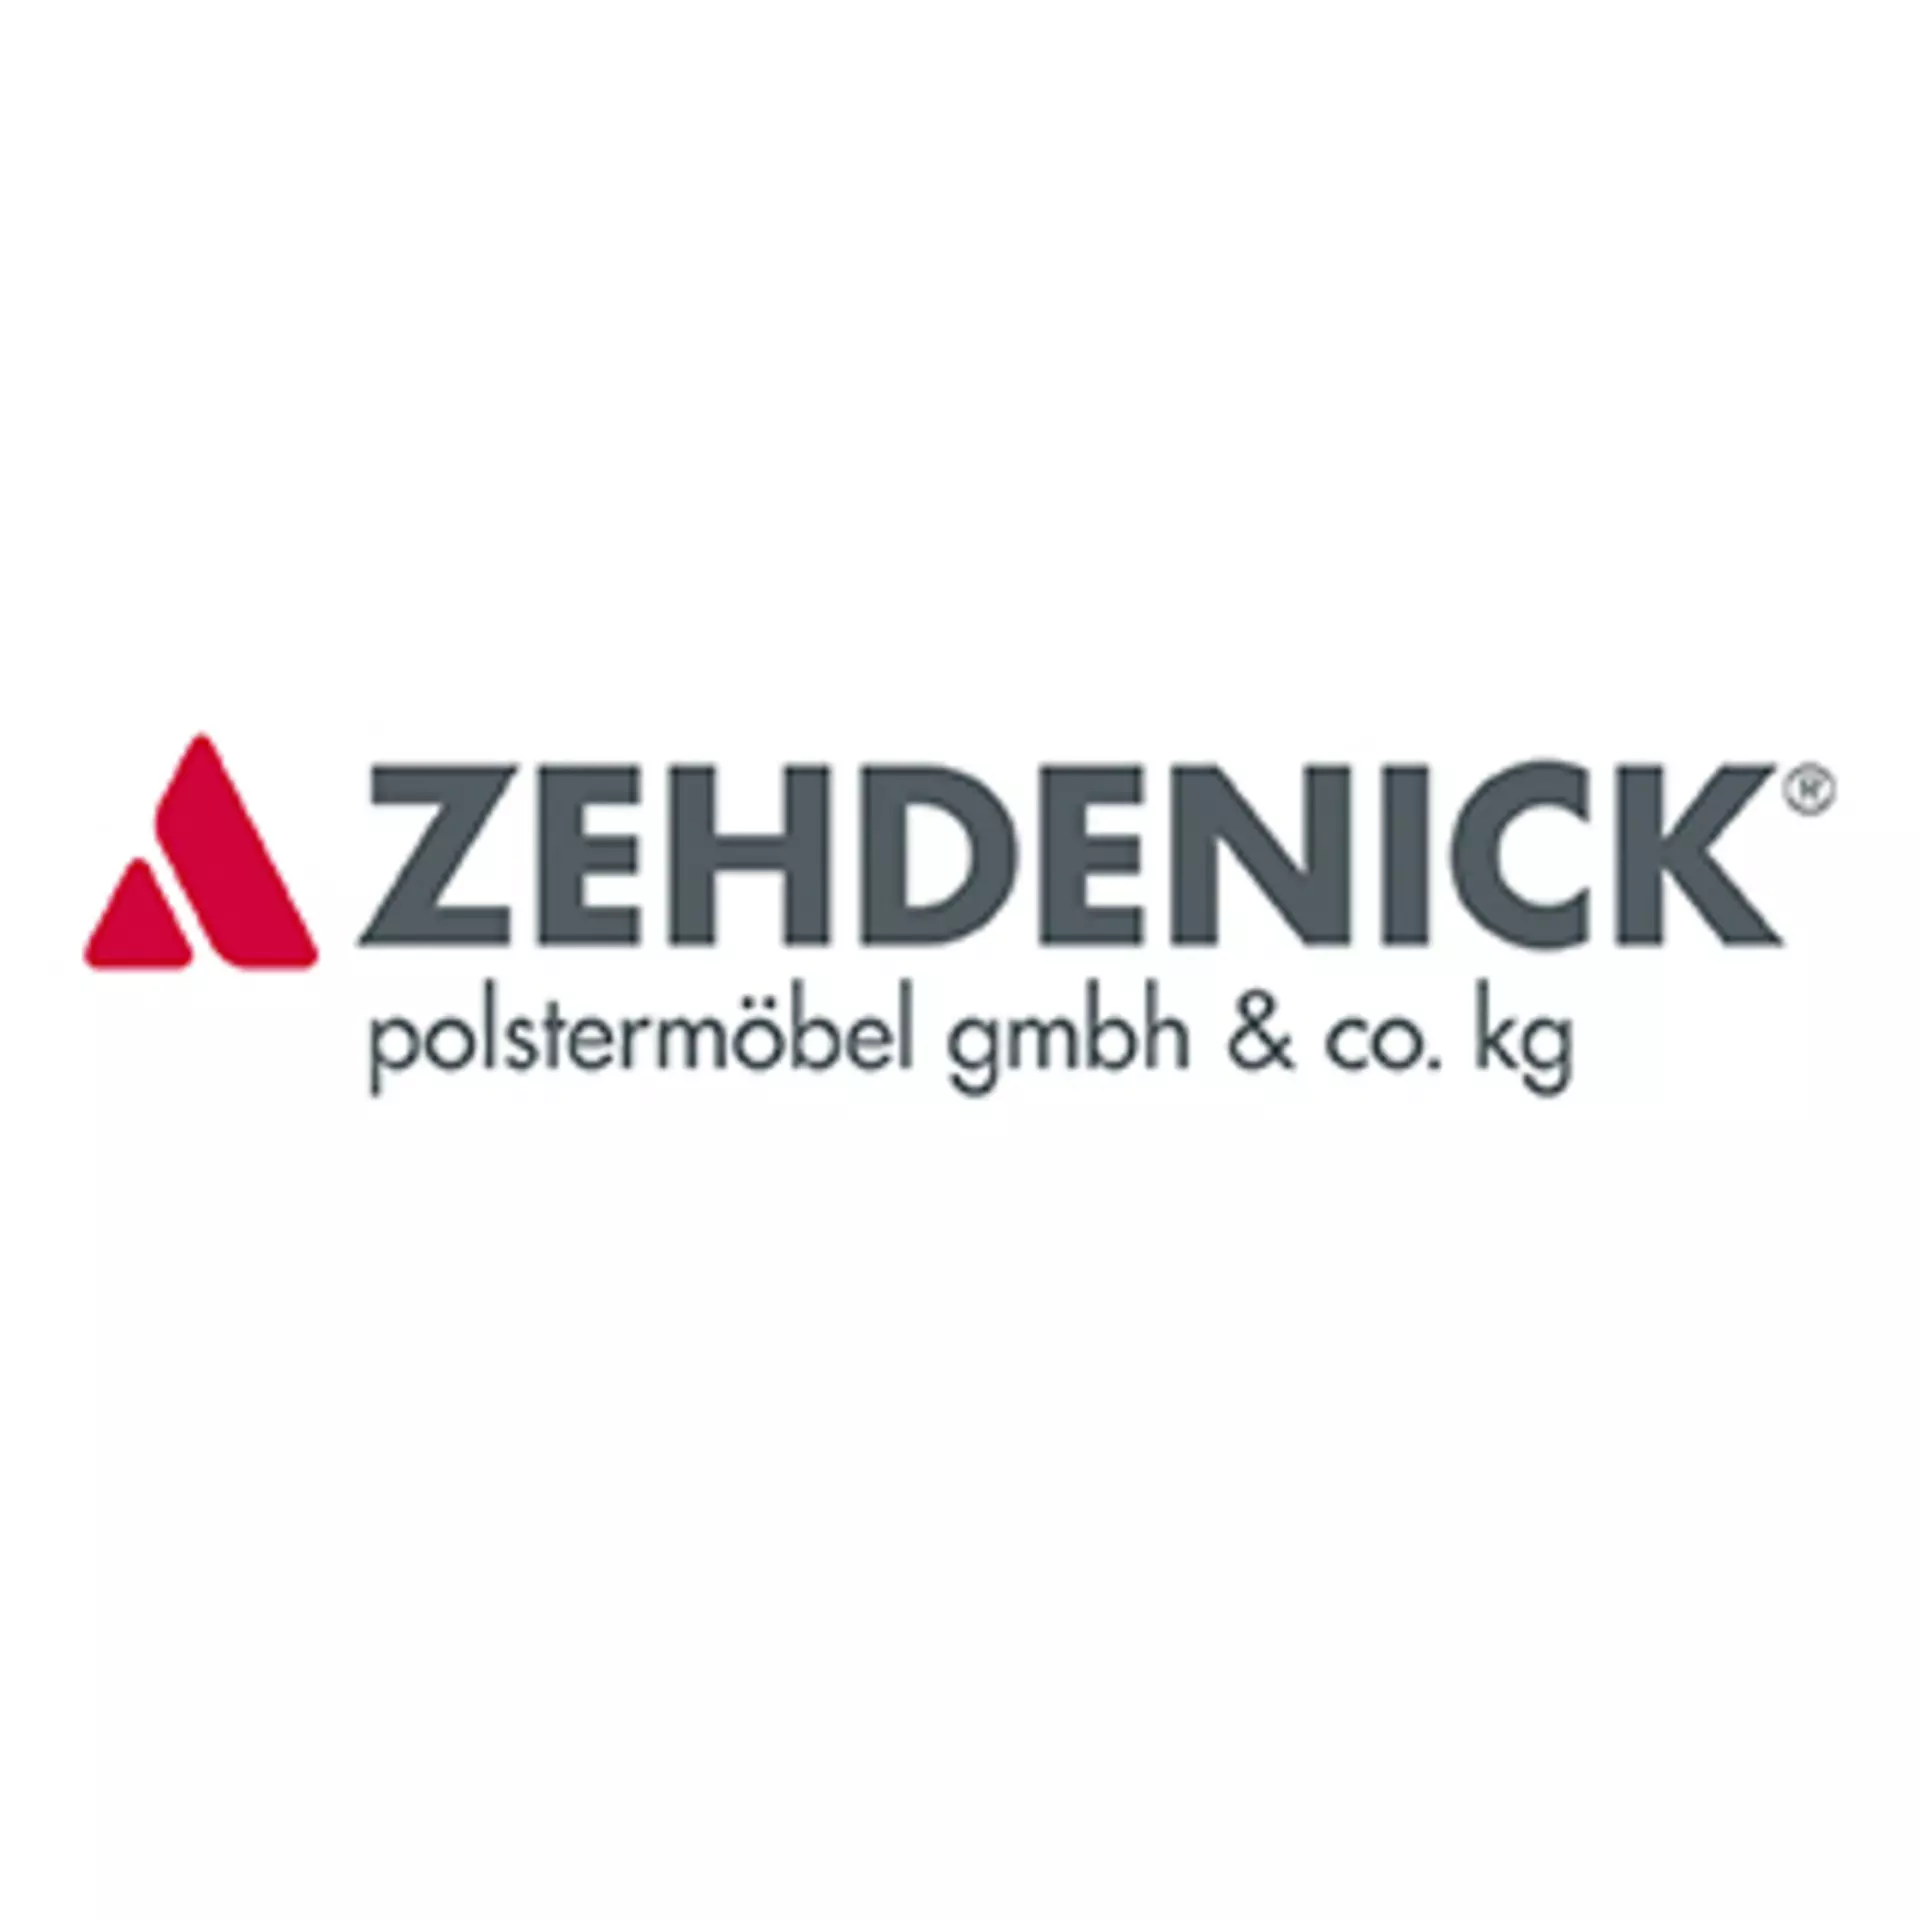 Marken Logo "Zehdenick-polstermöbel gmbh&co. kg" 